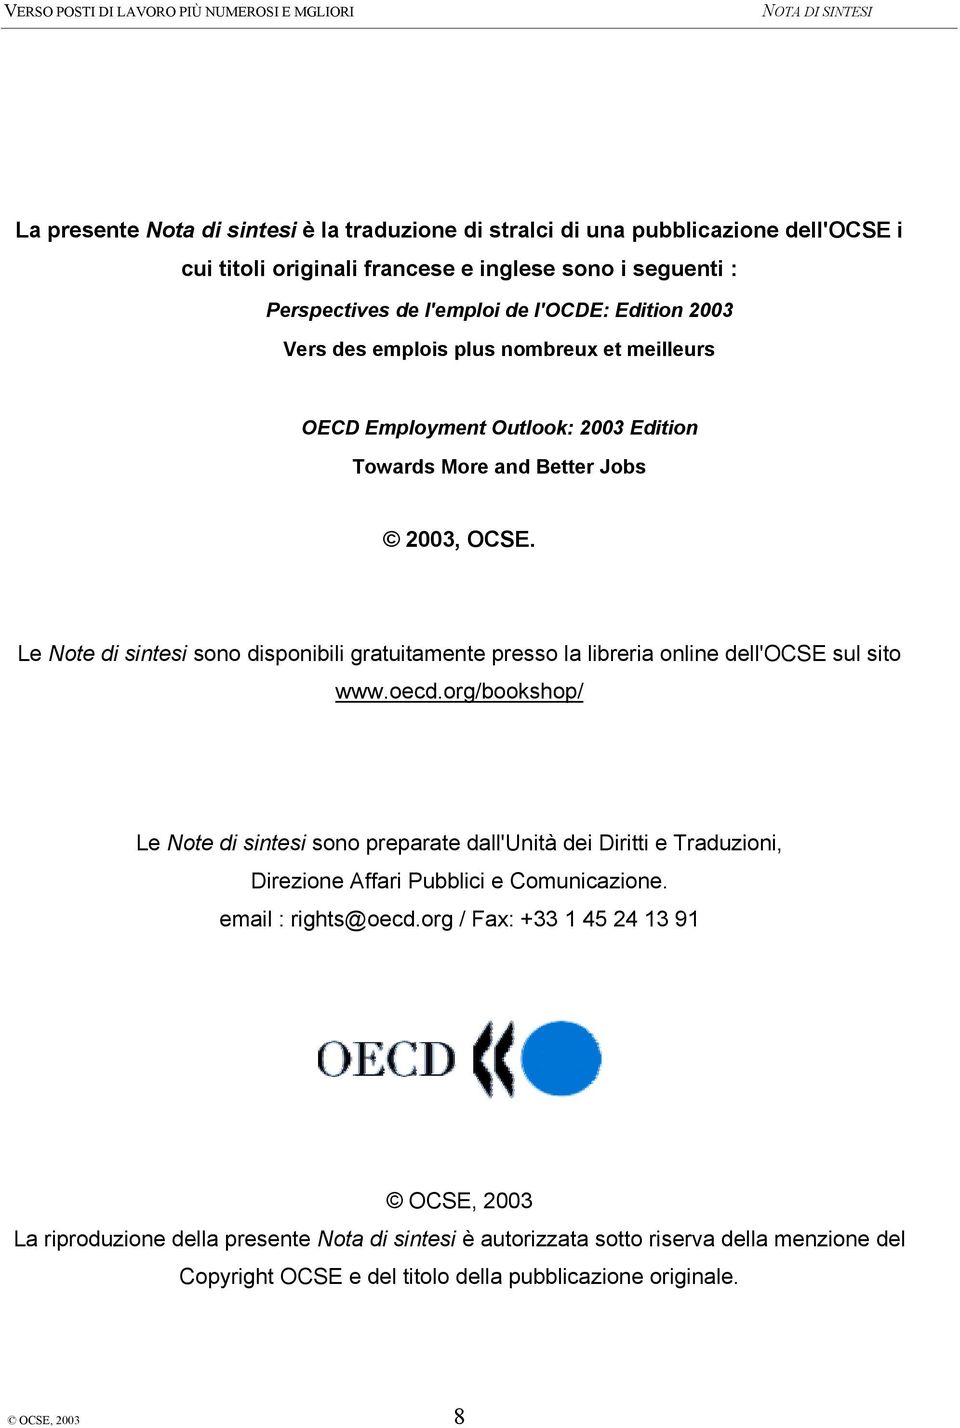 Le Note di sintesi sono disponibili gratuitamente presso la libreria online dell'ocse sul sito www.oecd.